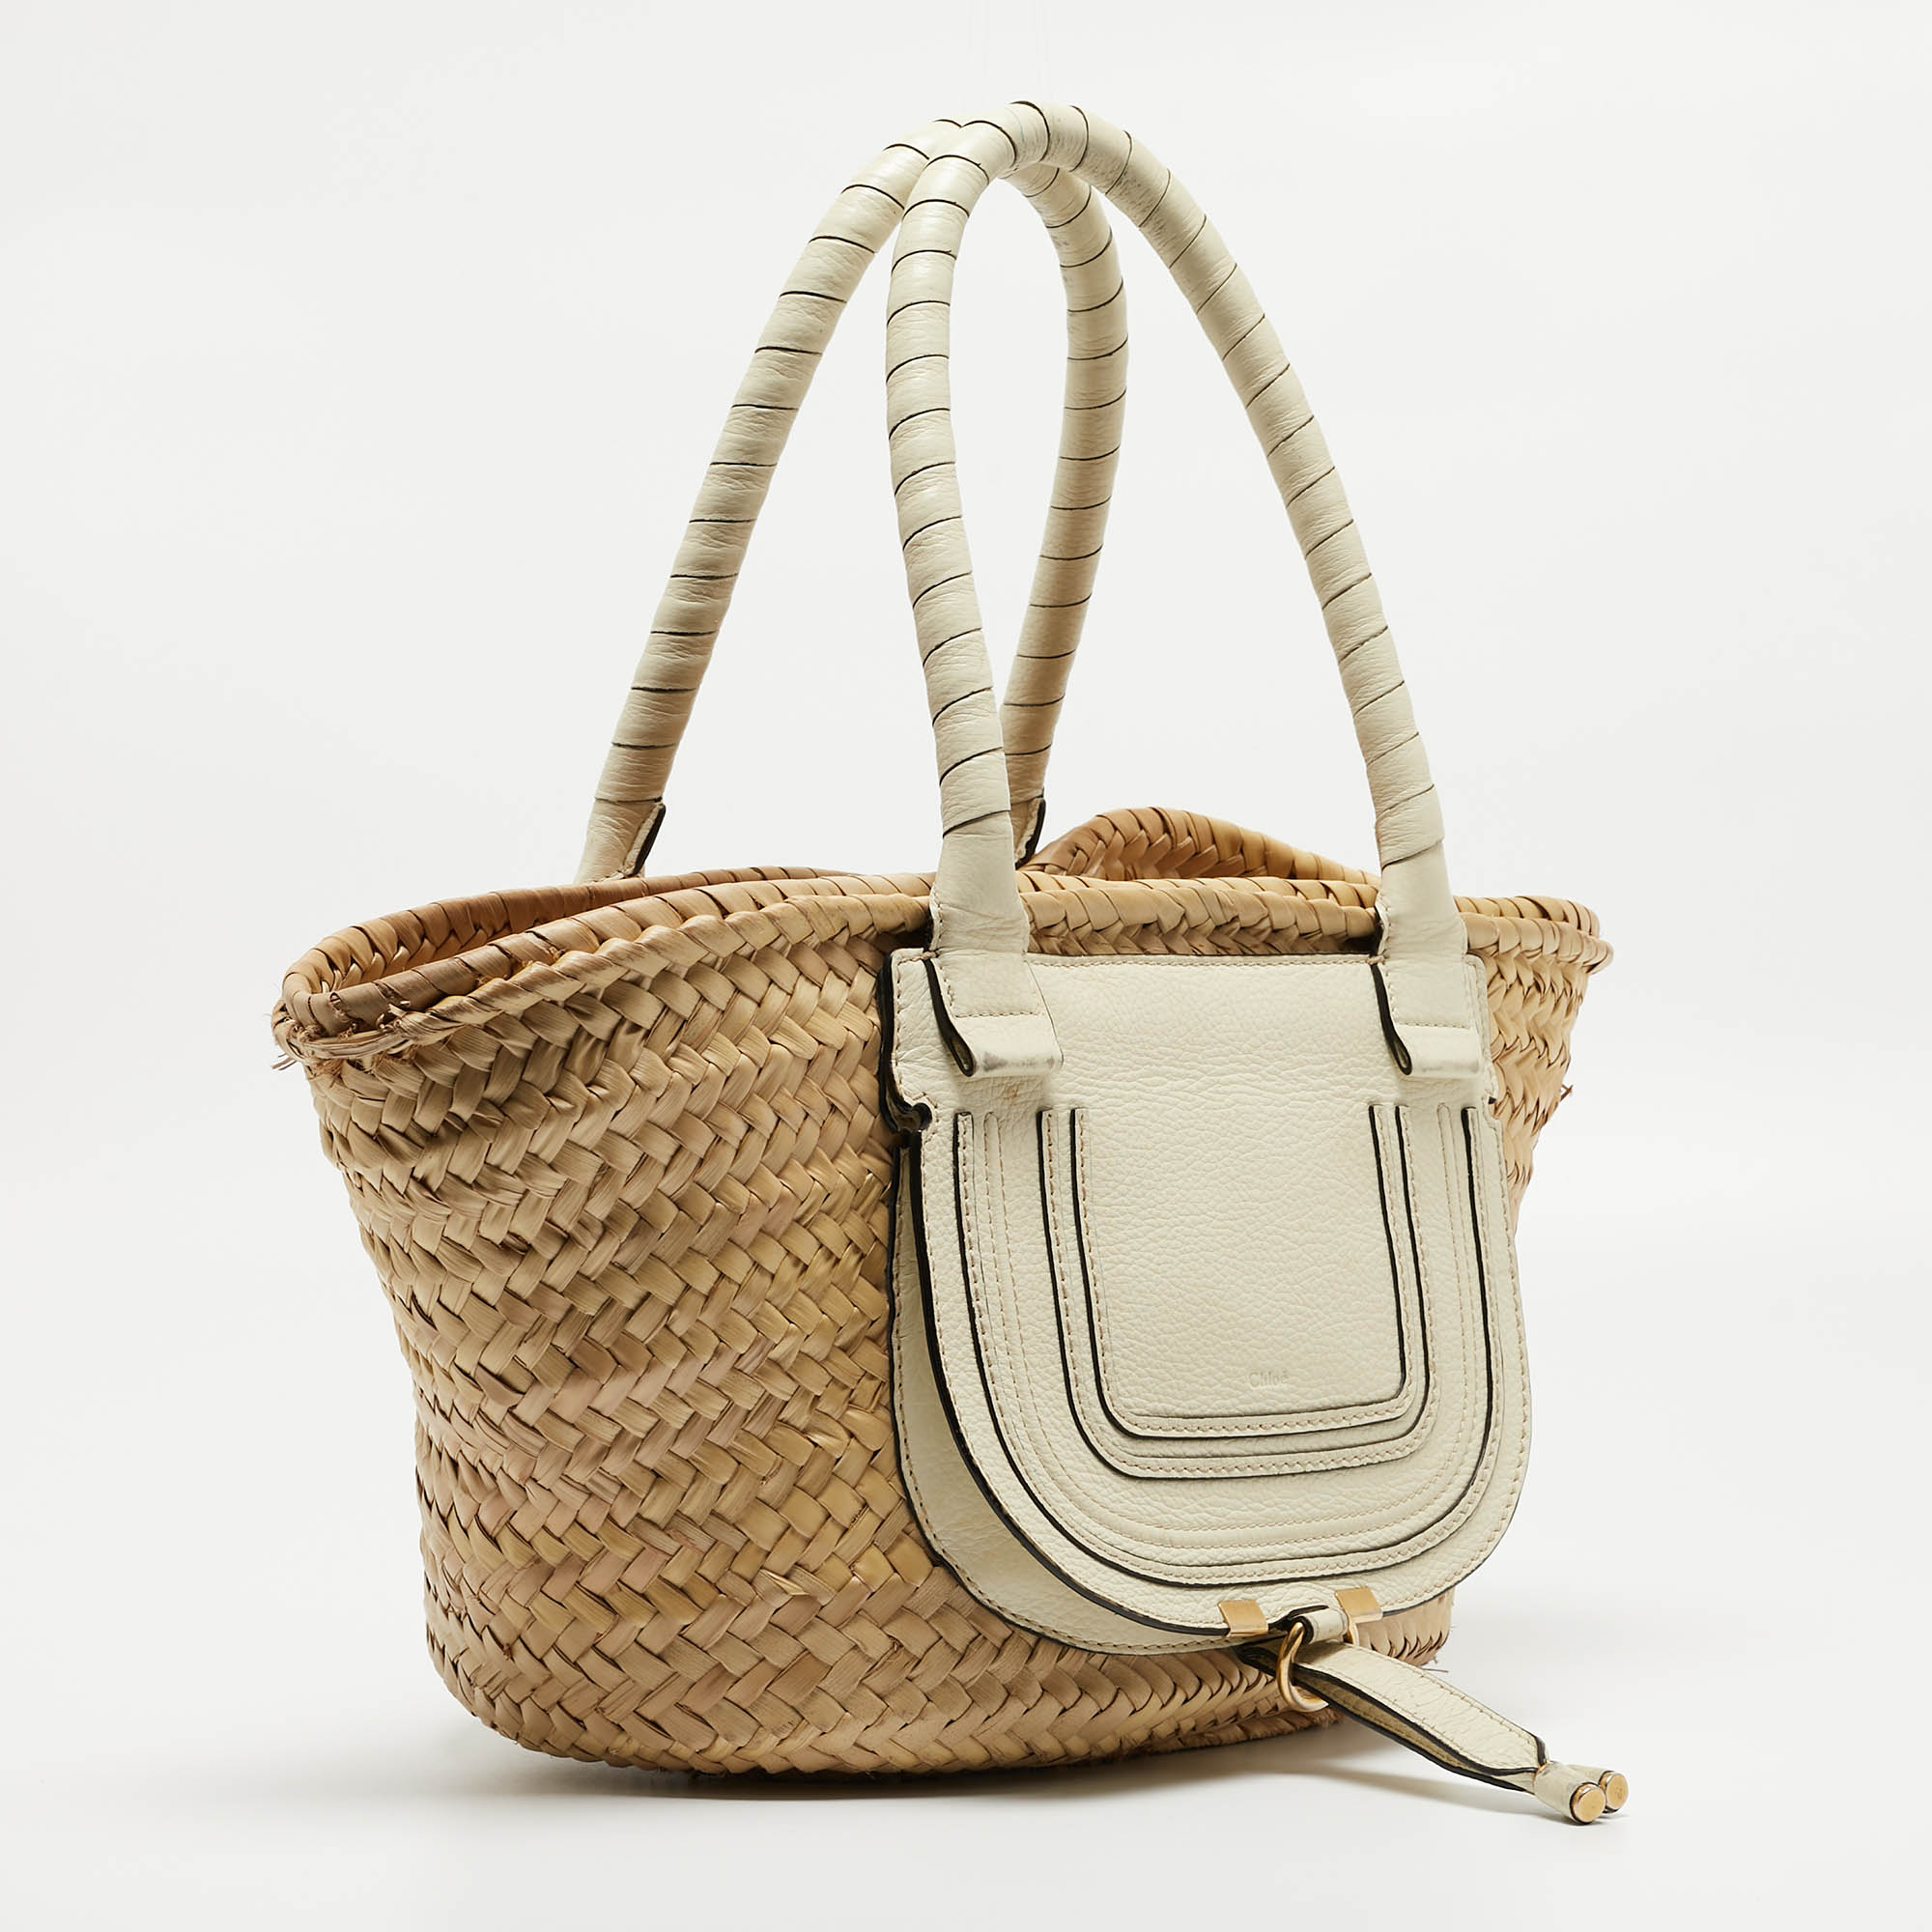 Chloe Beige/Cream Straw And Leather Medium Marcie Basket Bag